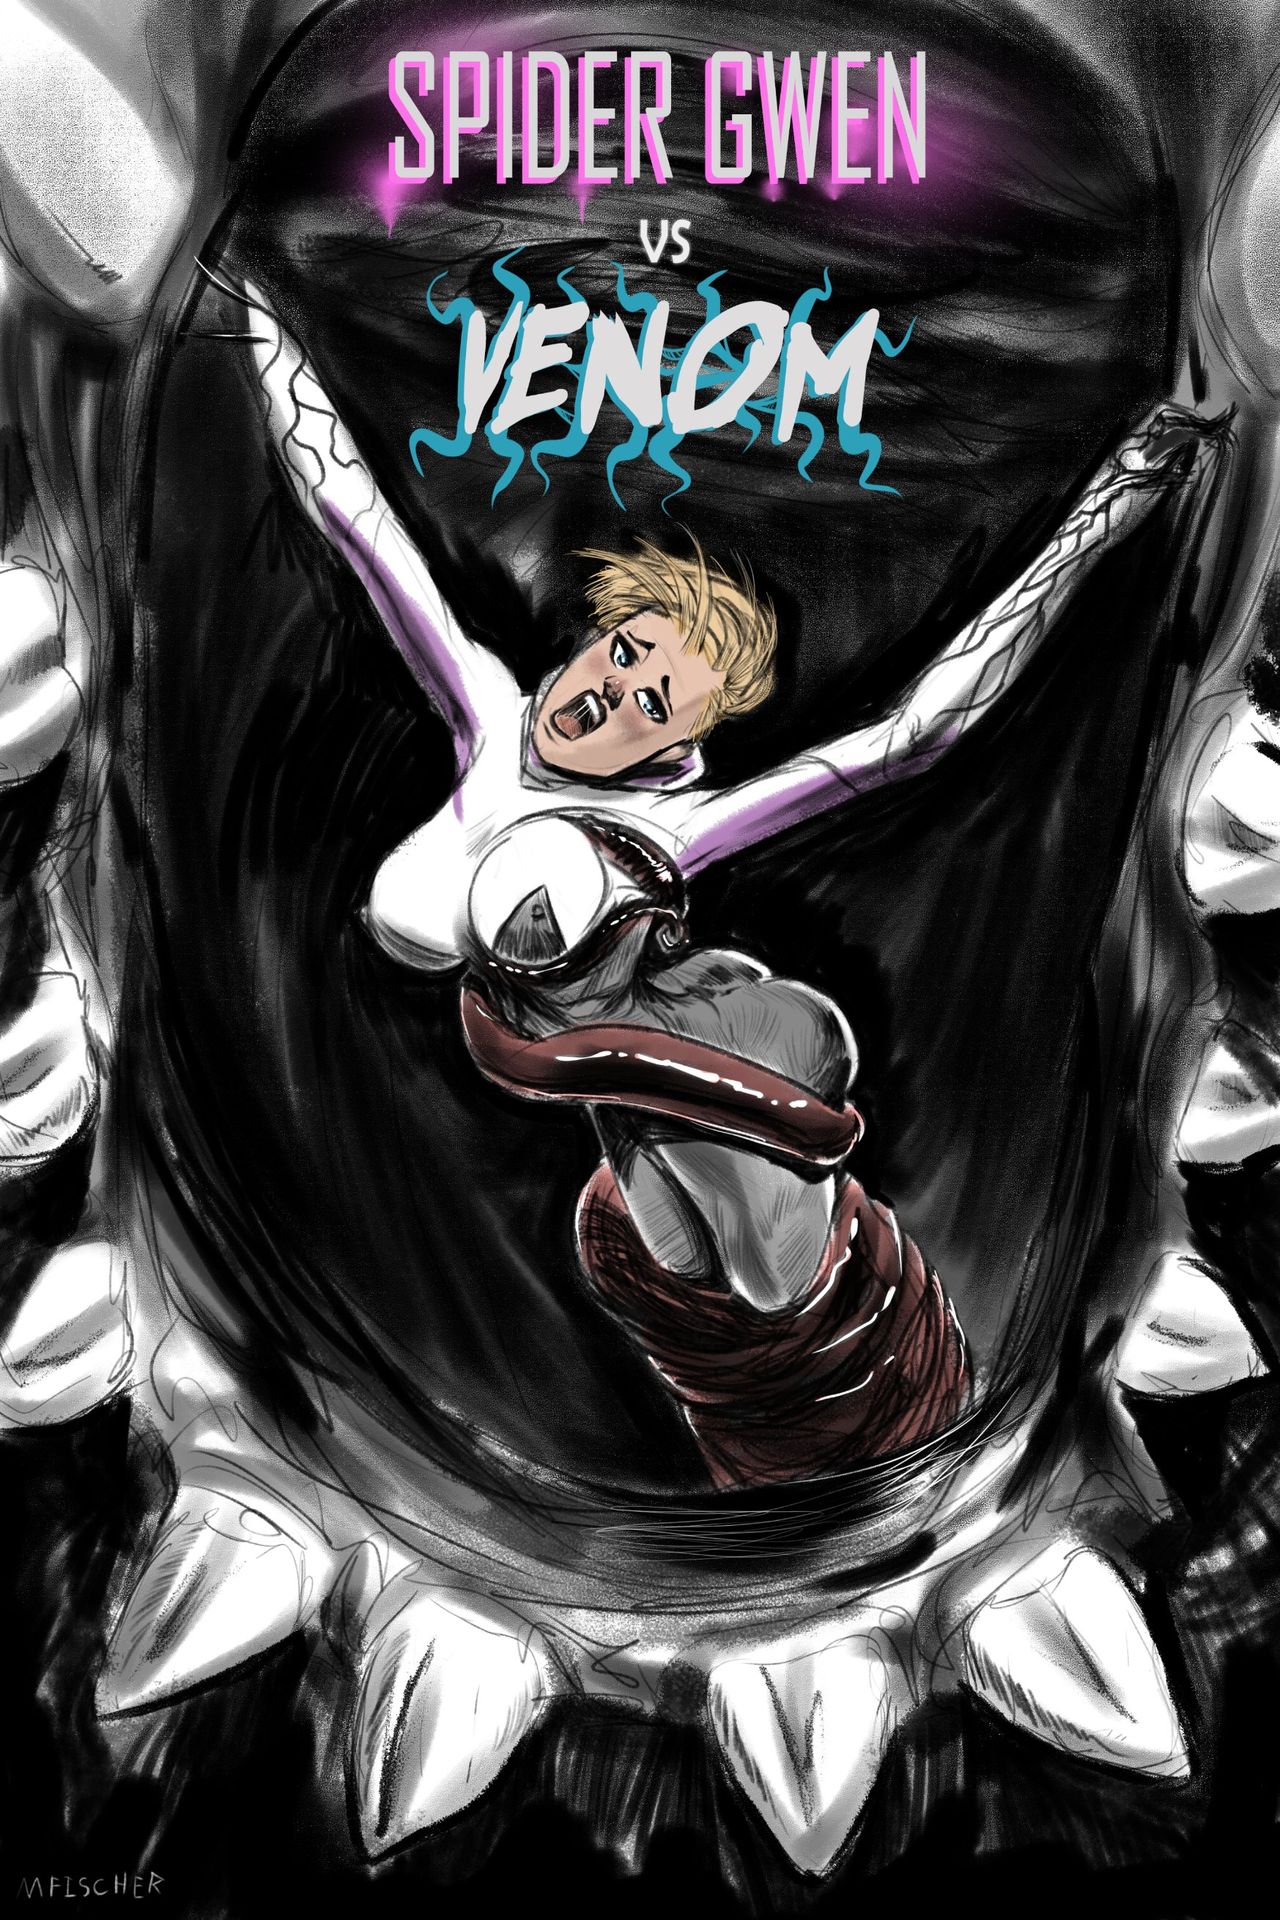 Venom’s Kiss – Spider-Gwen vs Venom #1 by Meinfischer